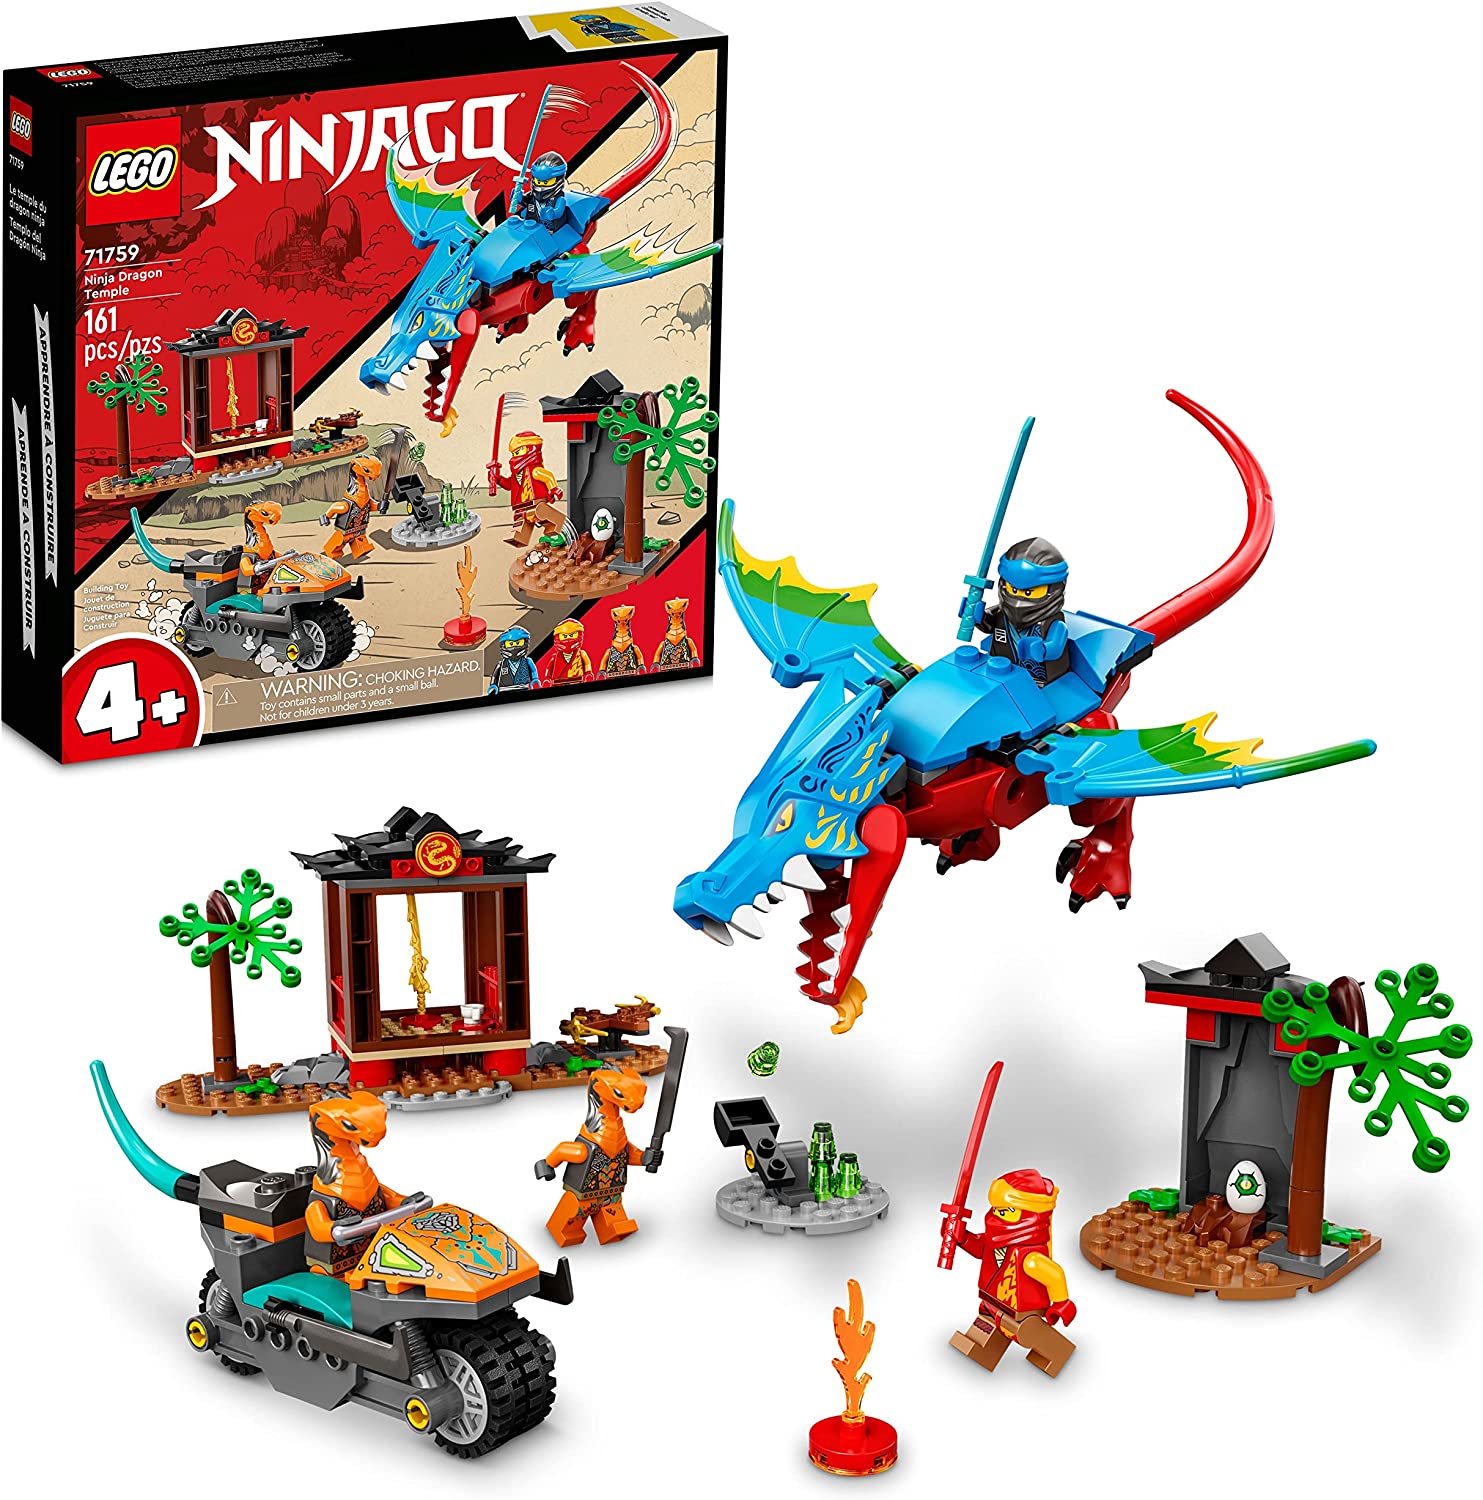 LEGO Ninjago Ninja Dragon Temple #71759